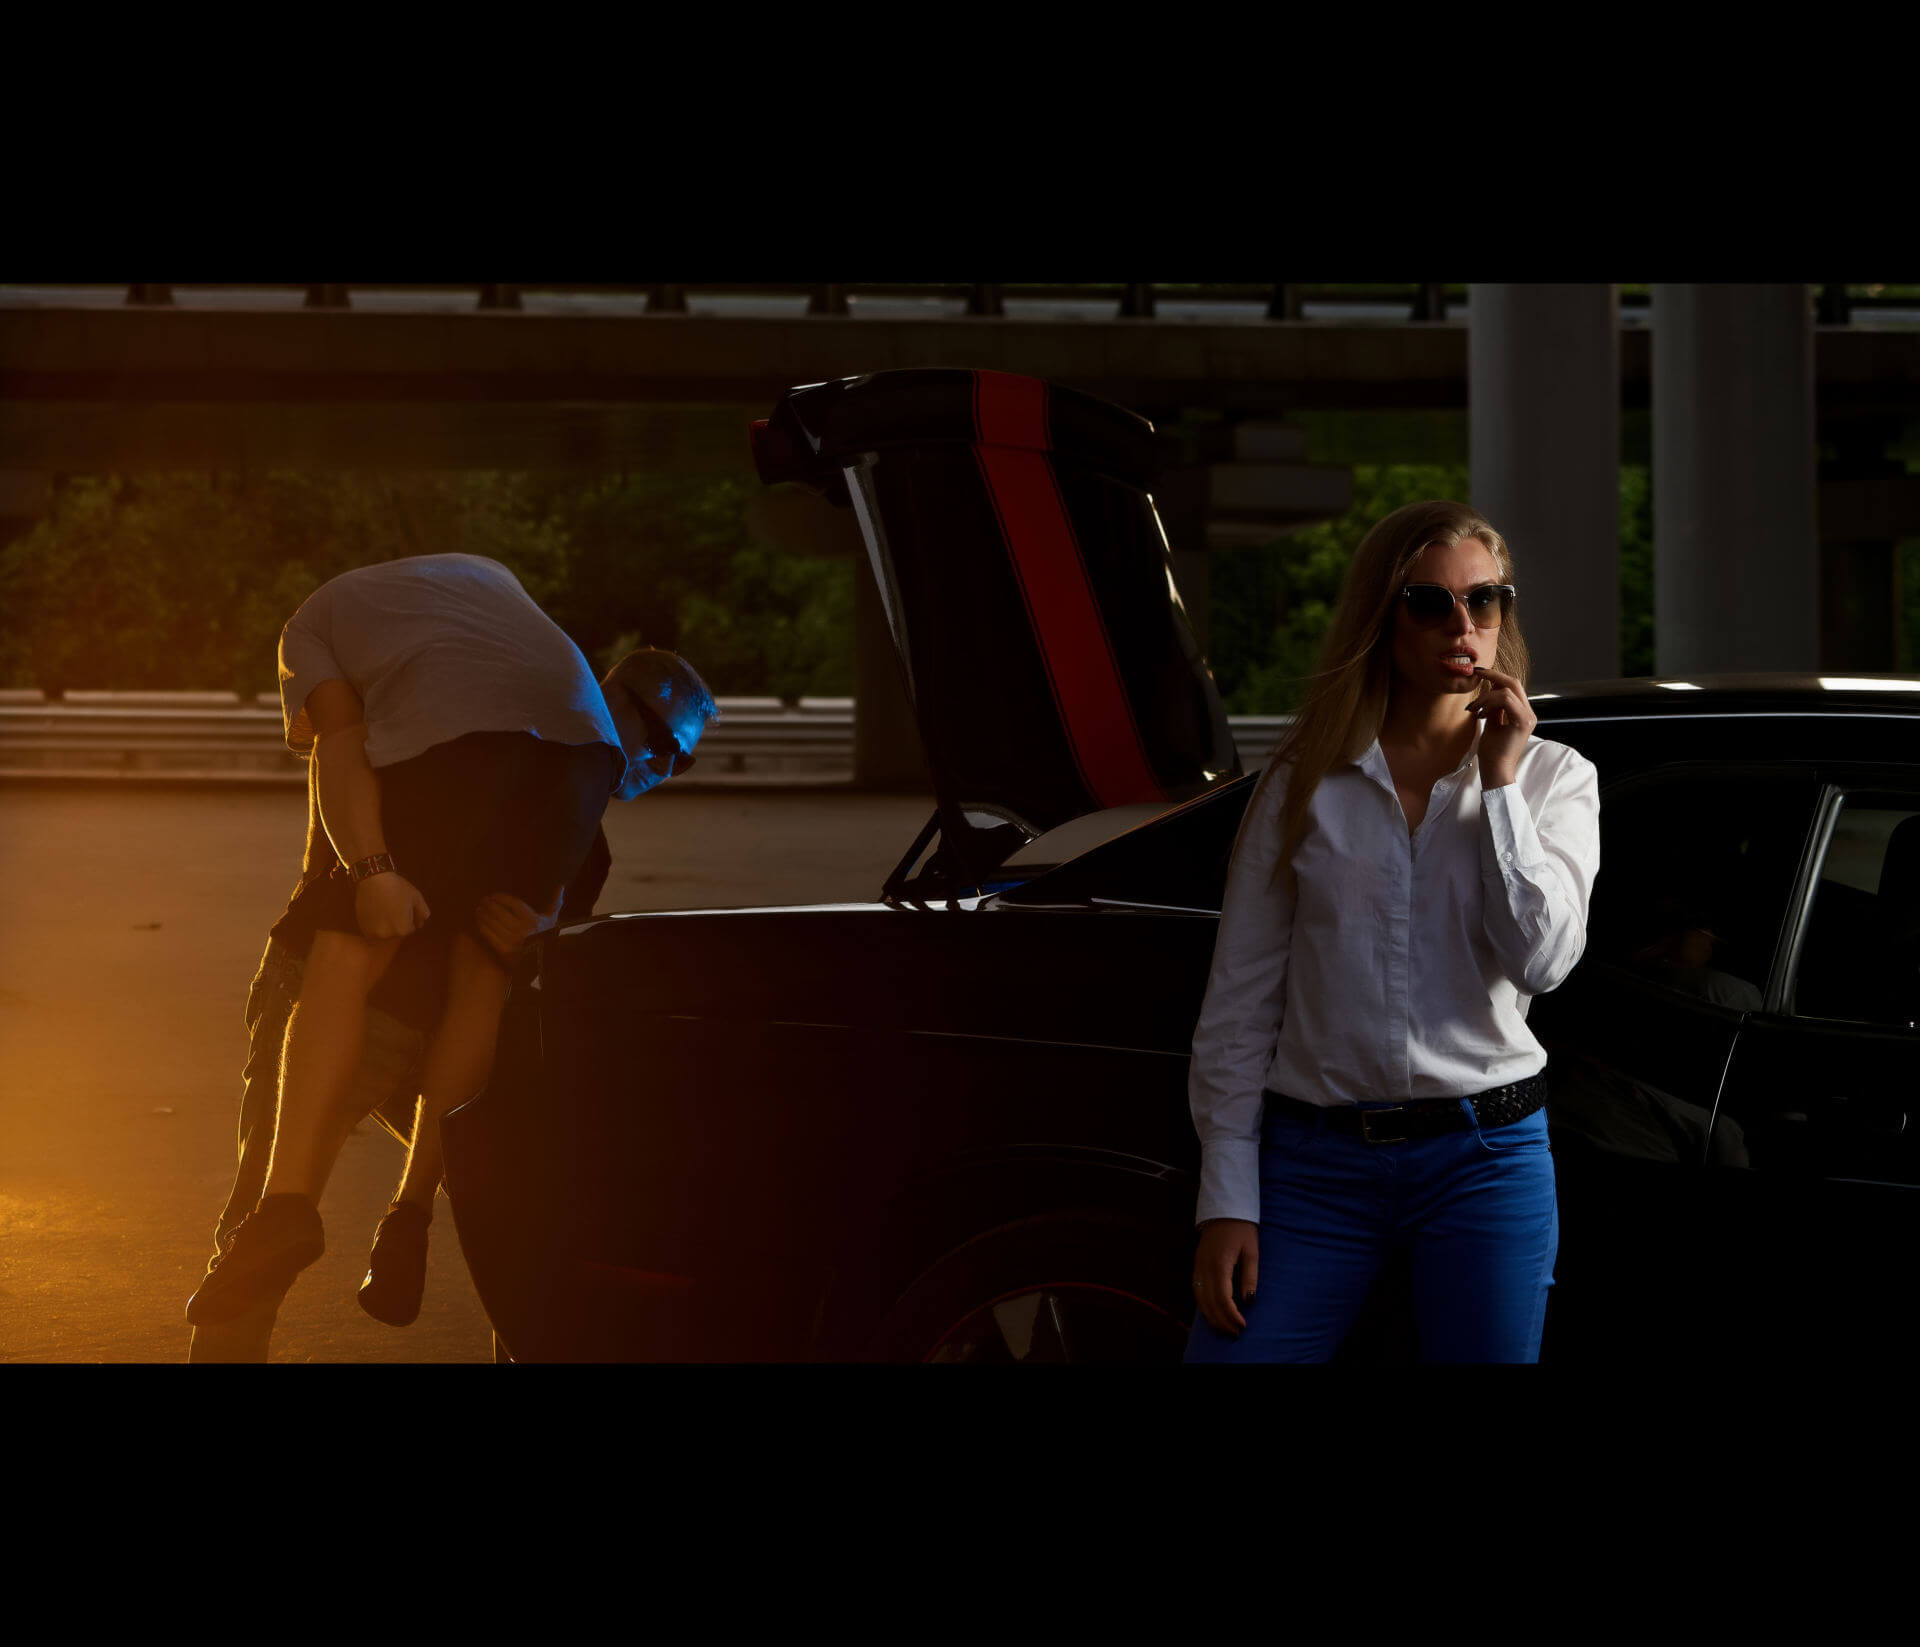 Труп в багажнике суперкара - криминальная фотосессия с автомобилем и девушкой 